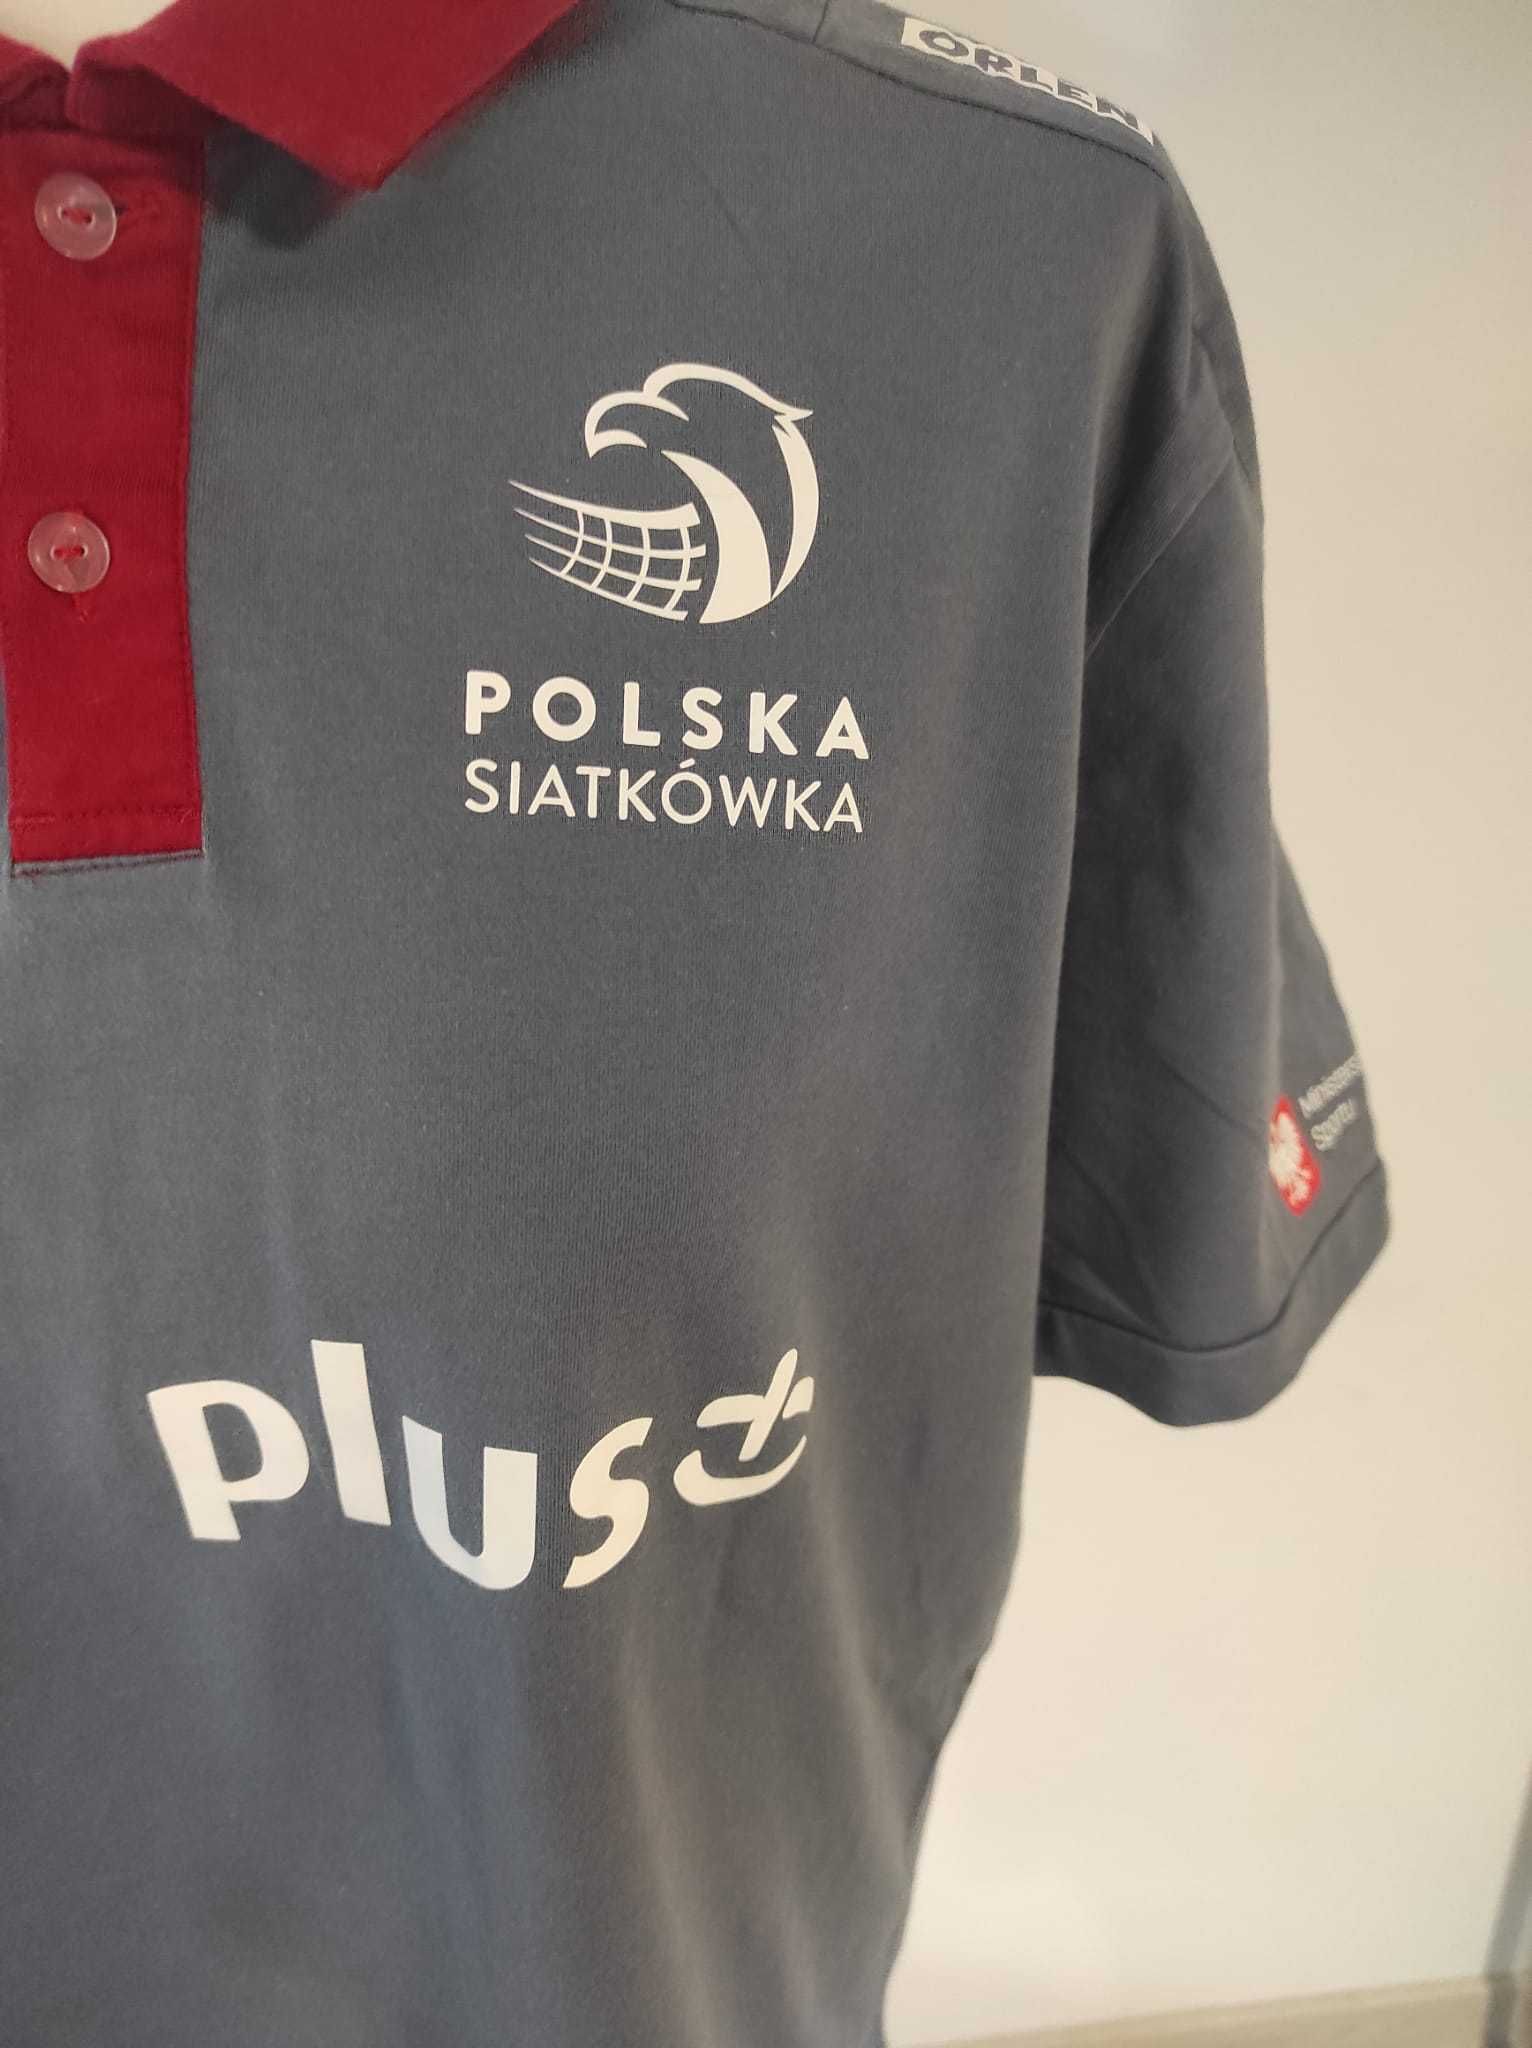 Koszulka Polo, Adidas, reprezentacja Polski, siatkówka, jak nowa